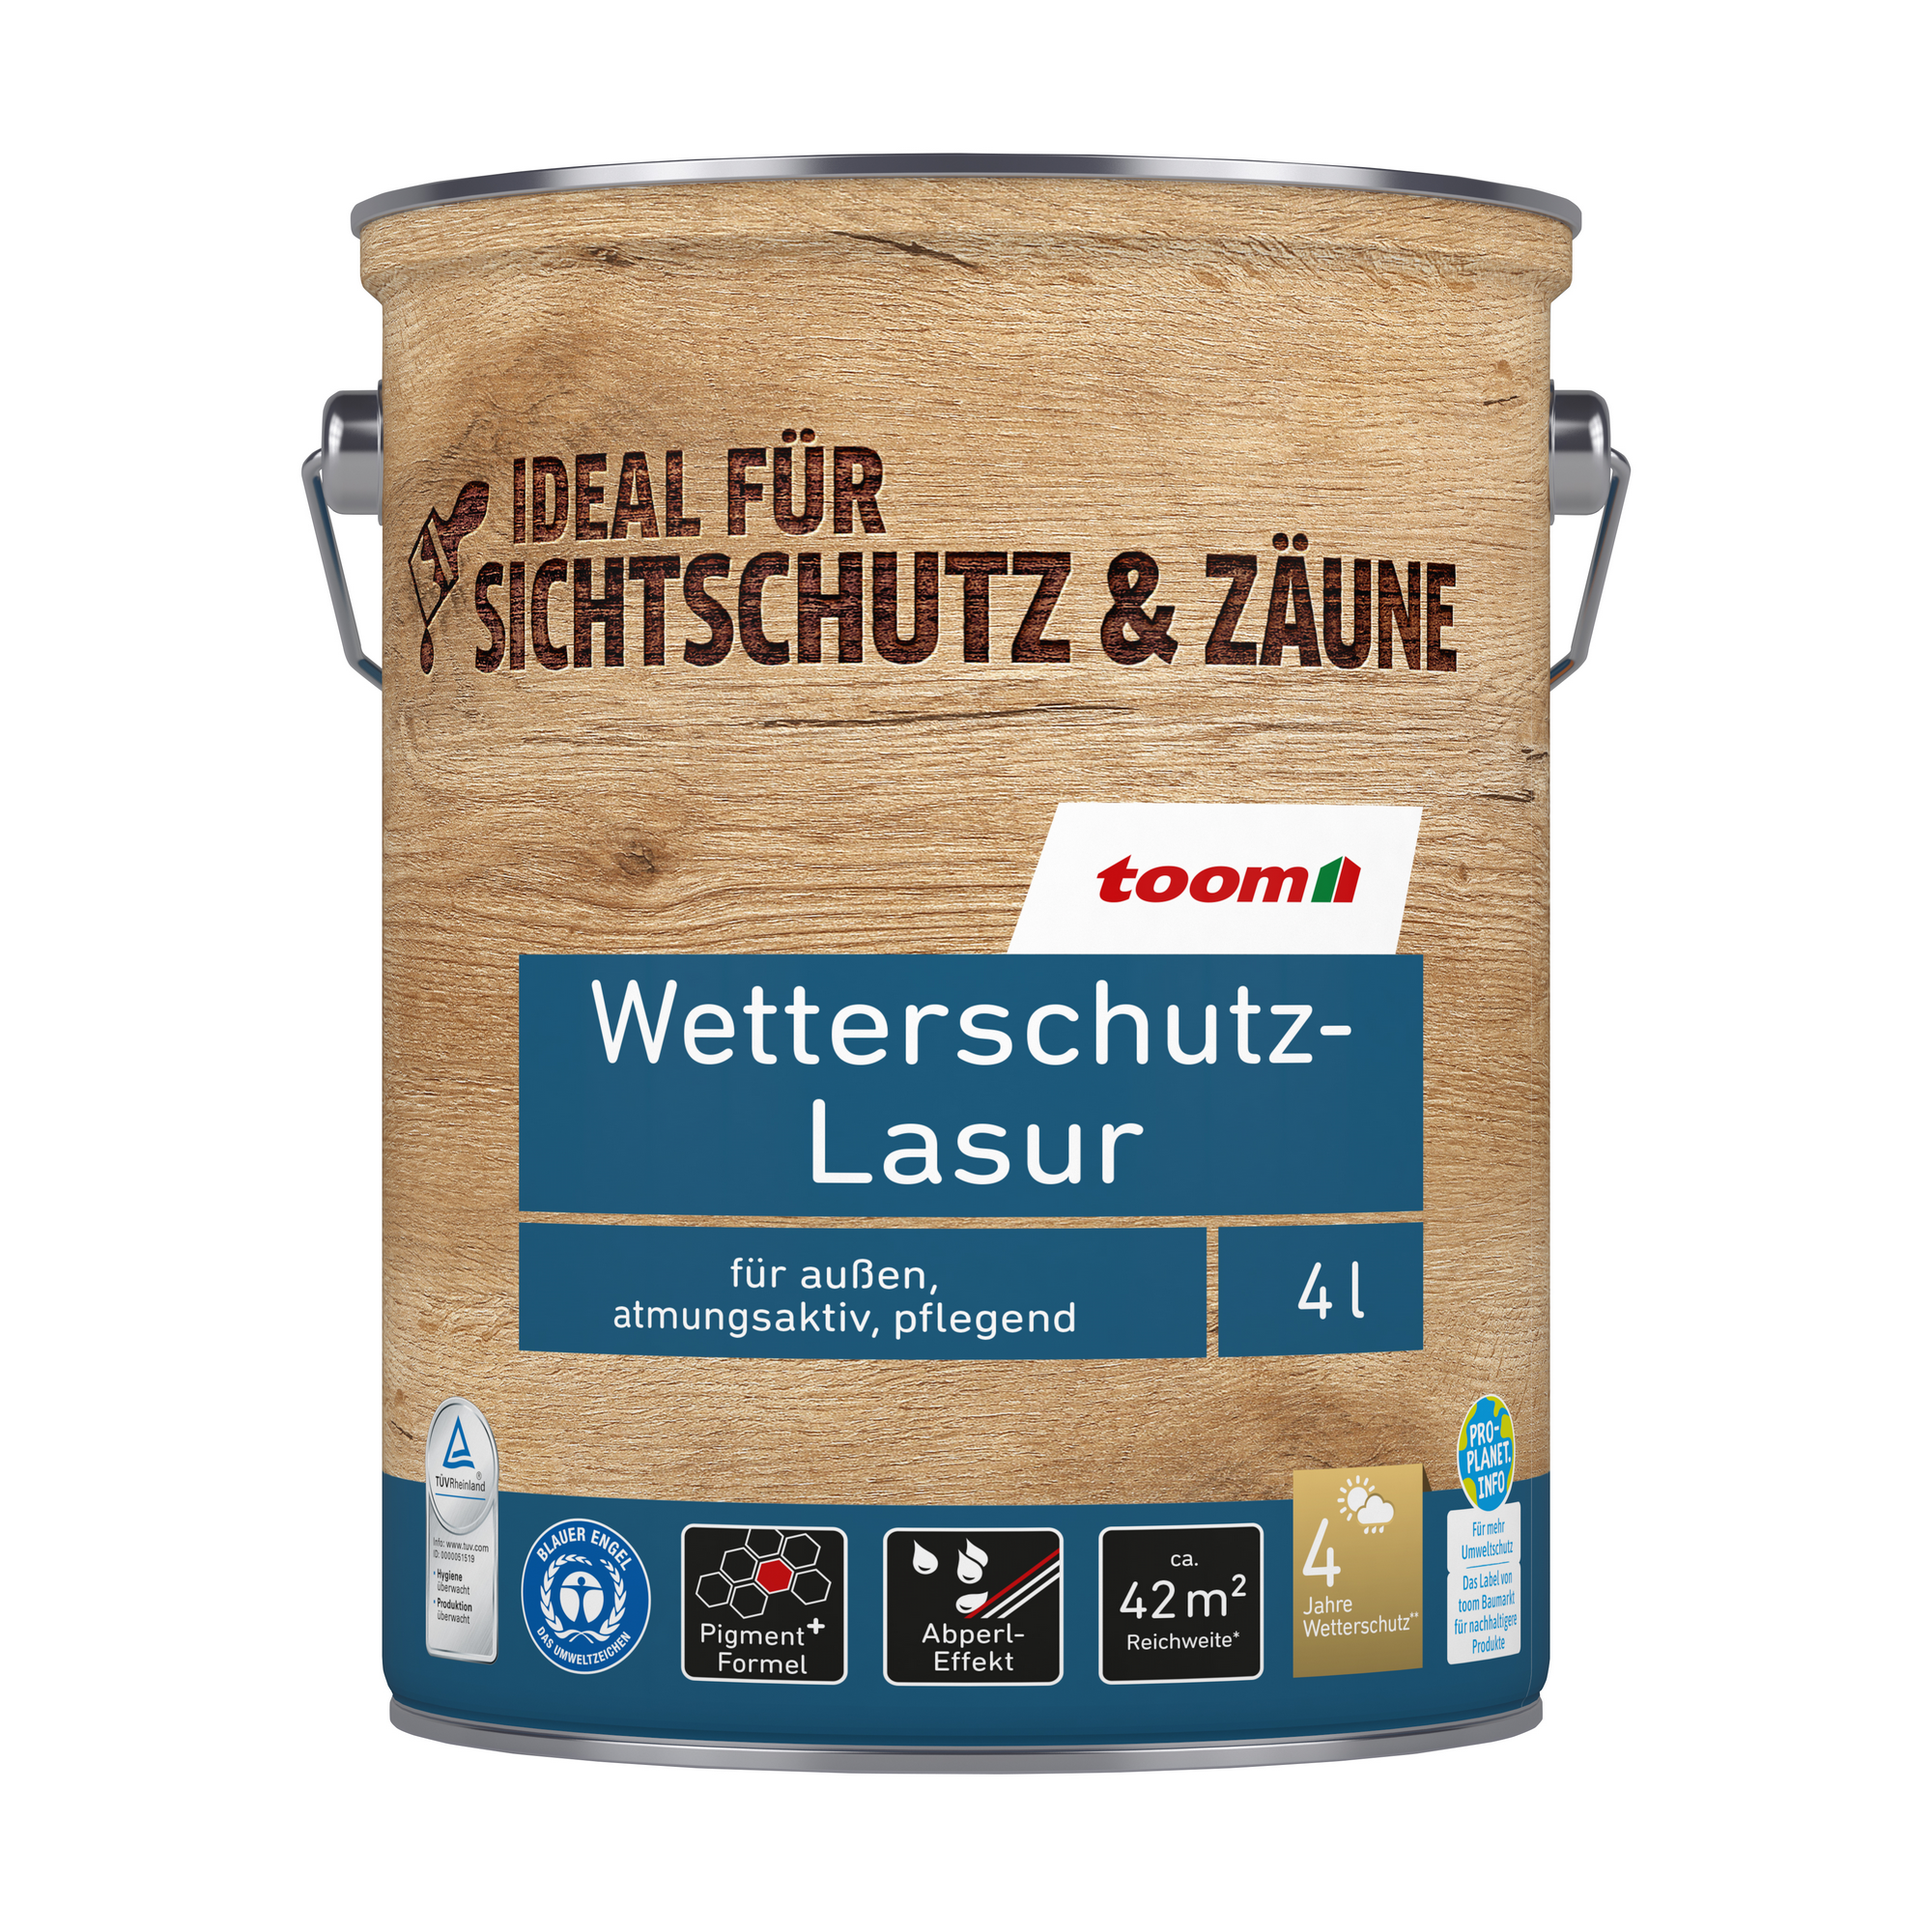 Wetterschutz-Lasur ebenholzfarben 4 l + product picture